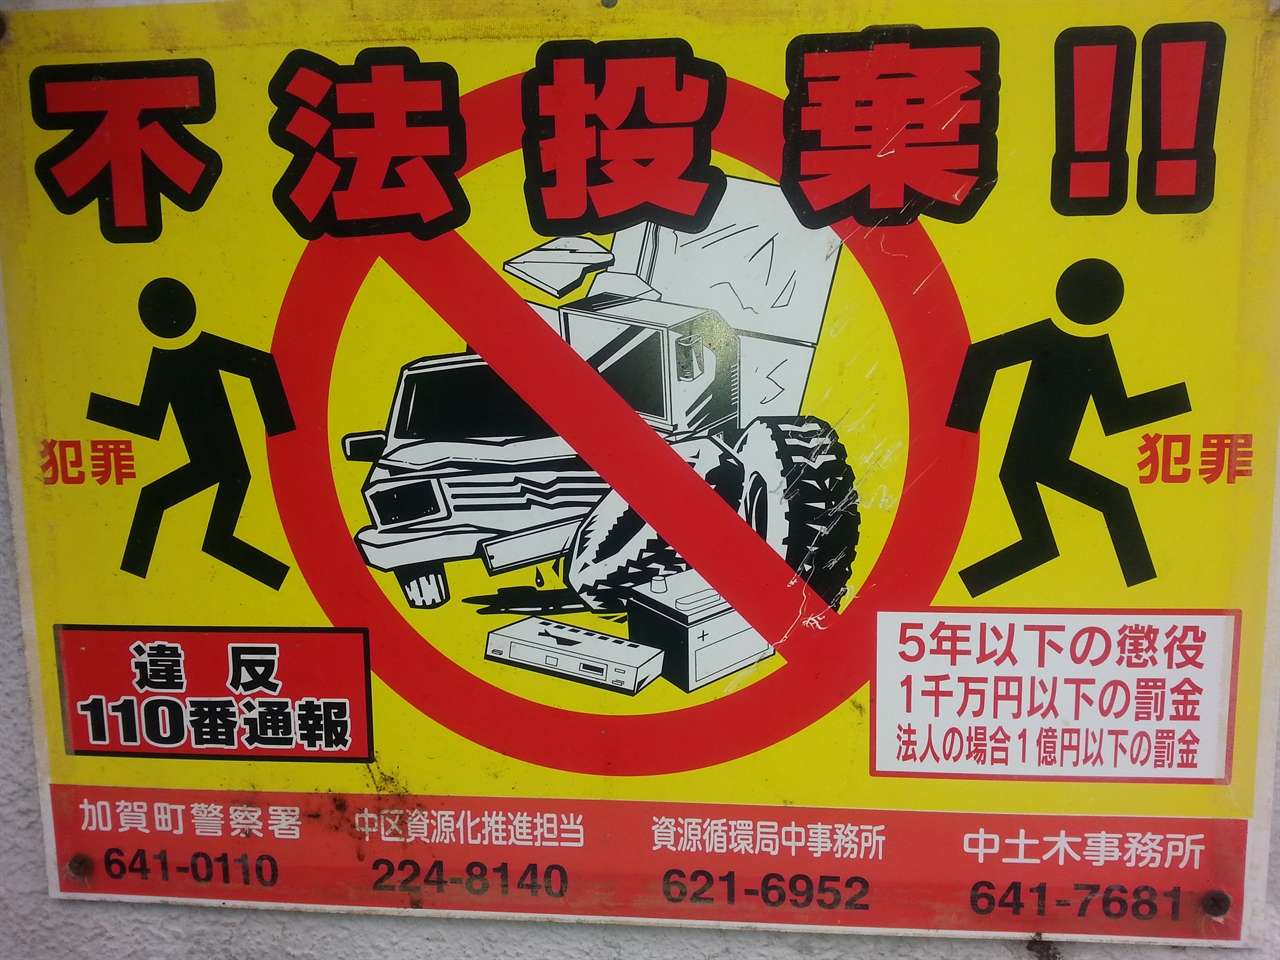 쓰레기 불법 투기 경고문